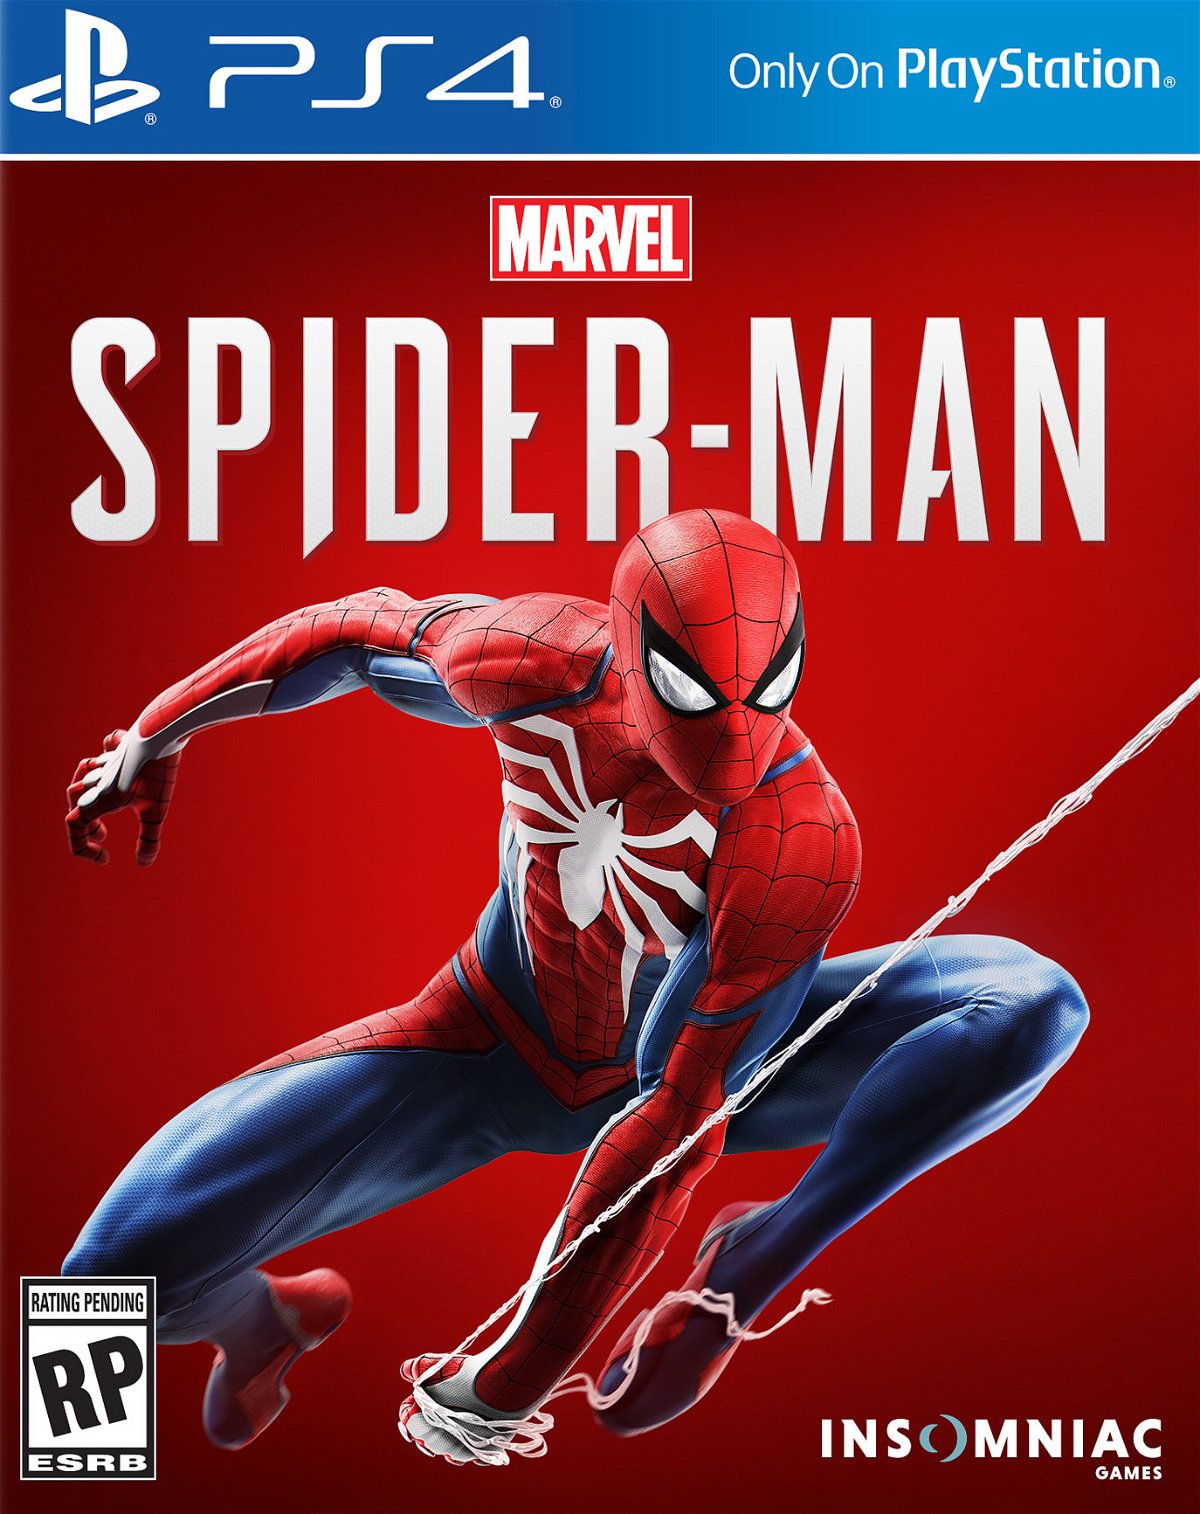 Marvel's Spider-Man in uscita il 7 settembre 2018 solo su PS4